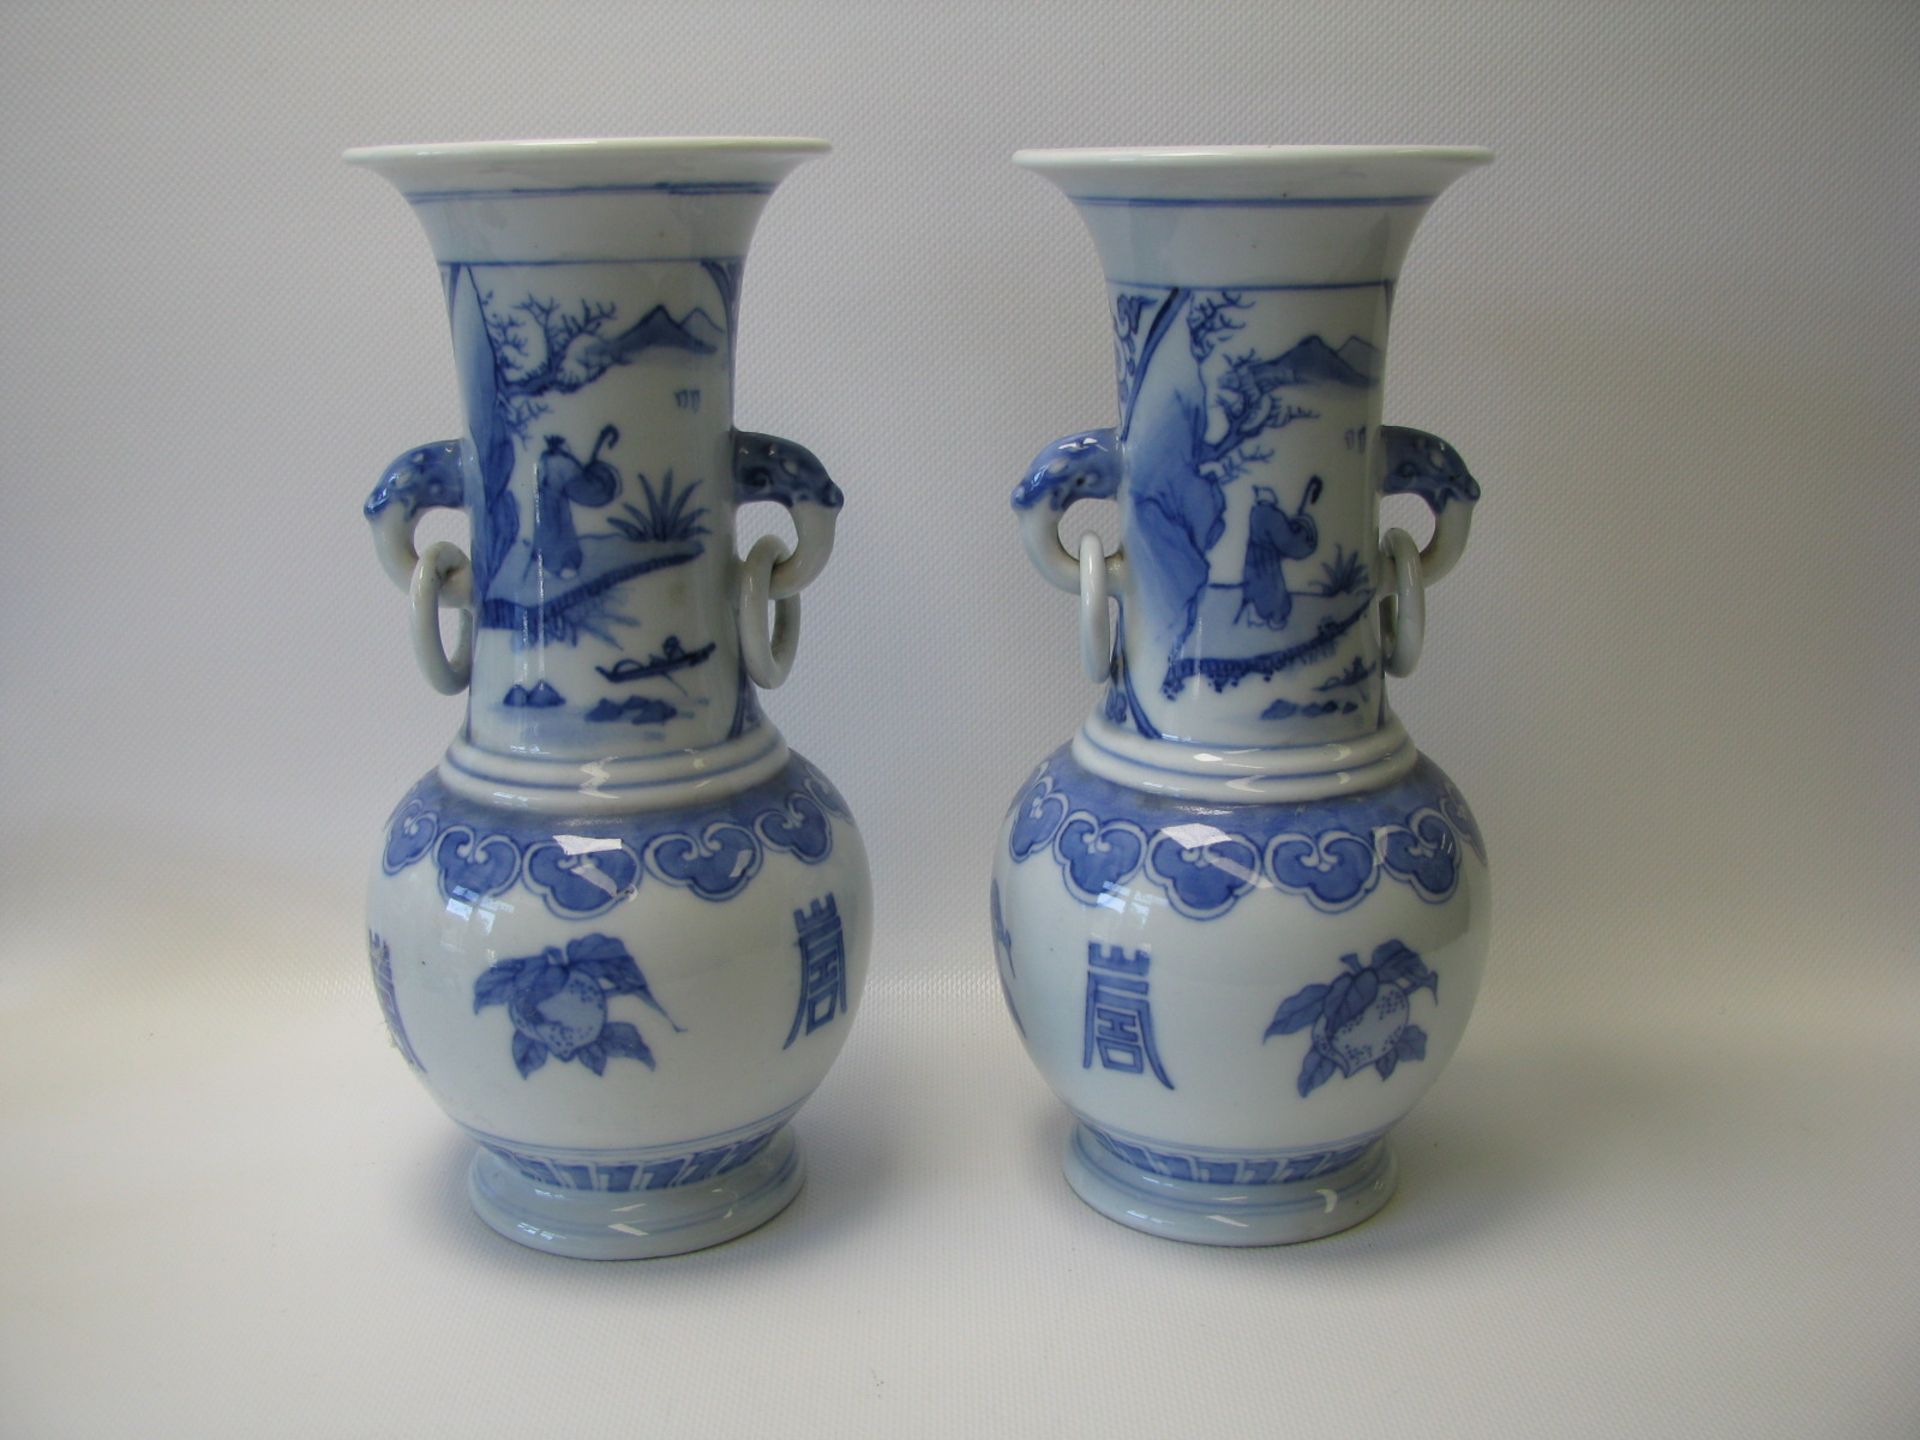 2 Vasen, China, Weißporzellan mit blauer Bemalung, 6-Zeichen-Marke, h 24 cm, d 11 cm.